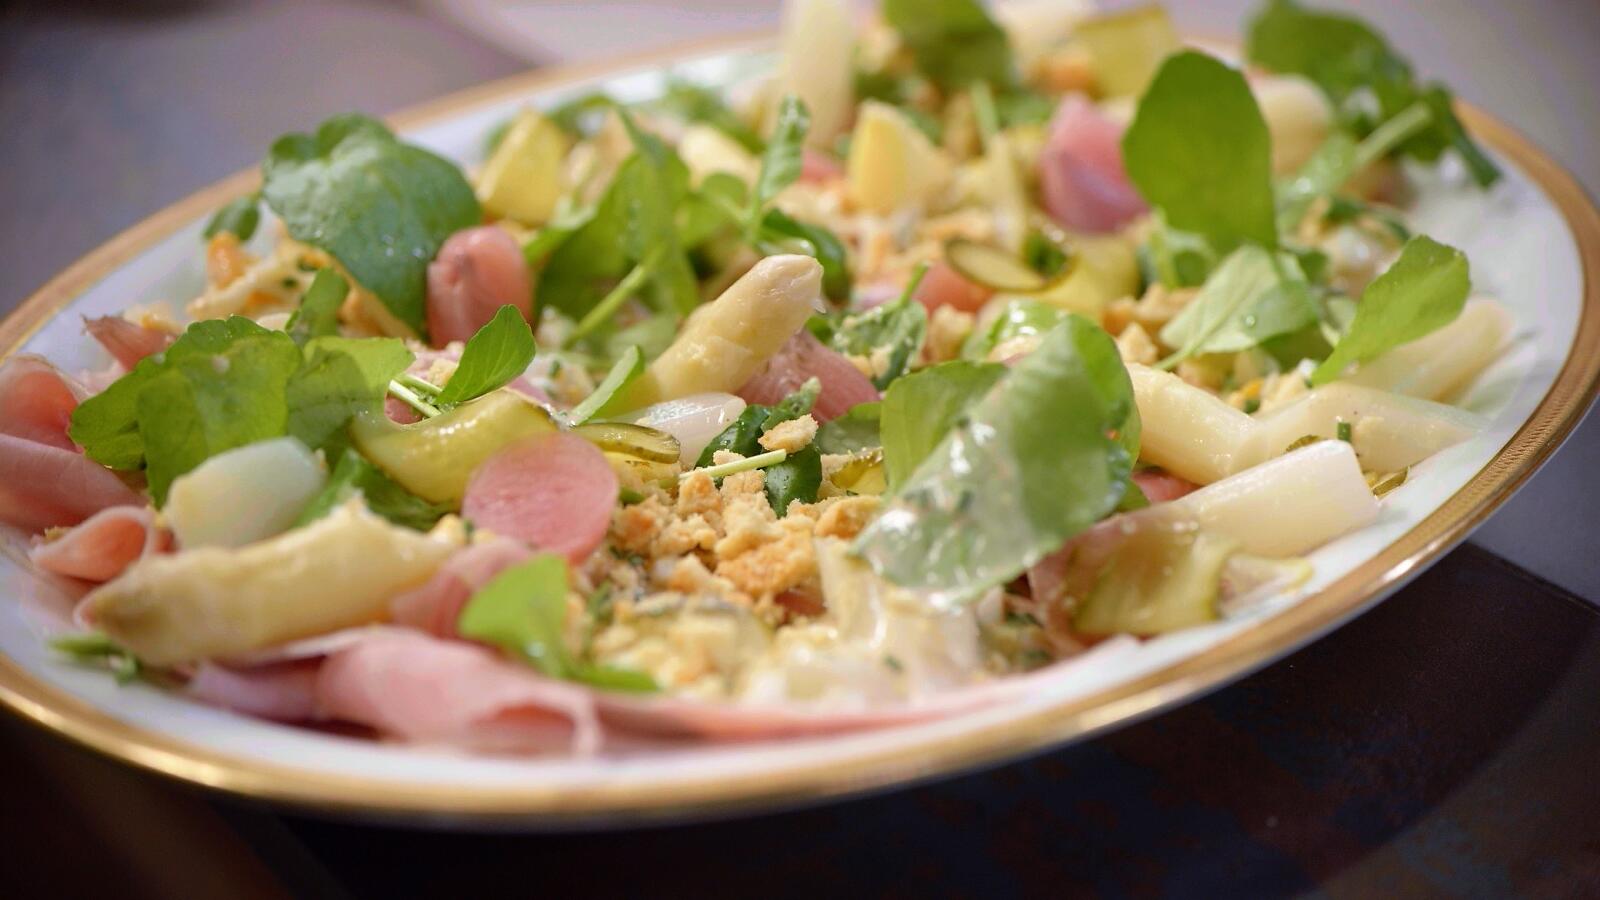 Salade van asperges met gekookte ham en vinaigrette salée met ei